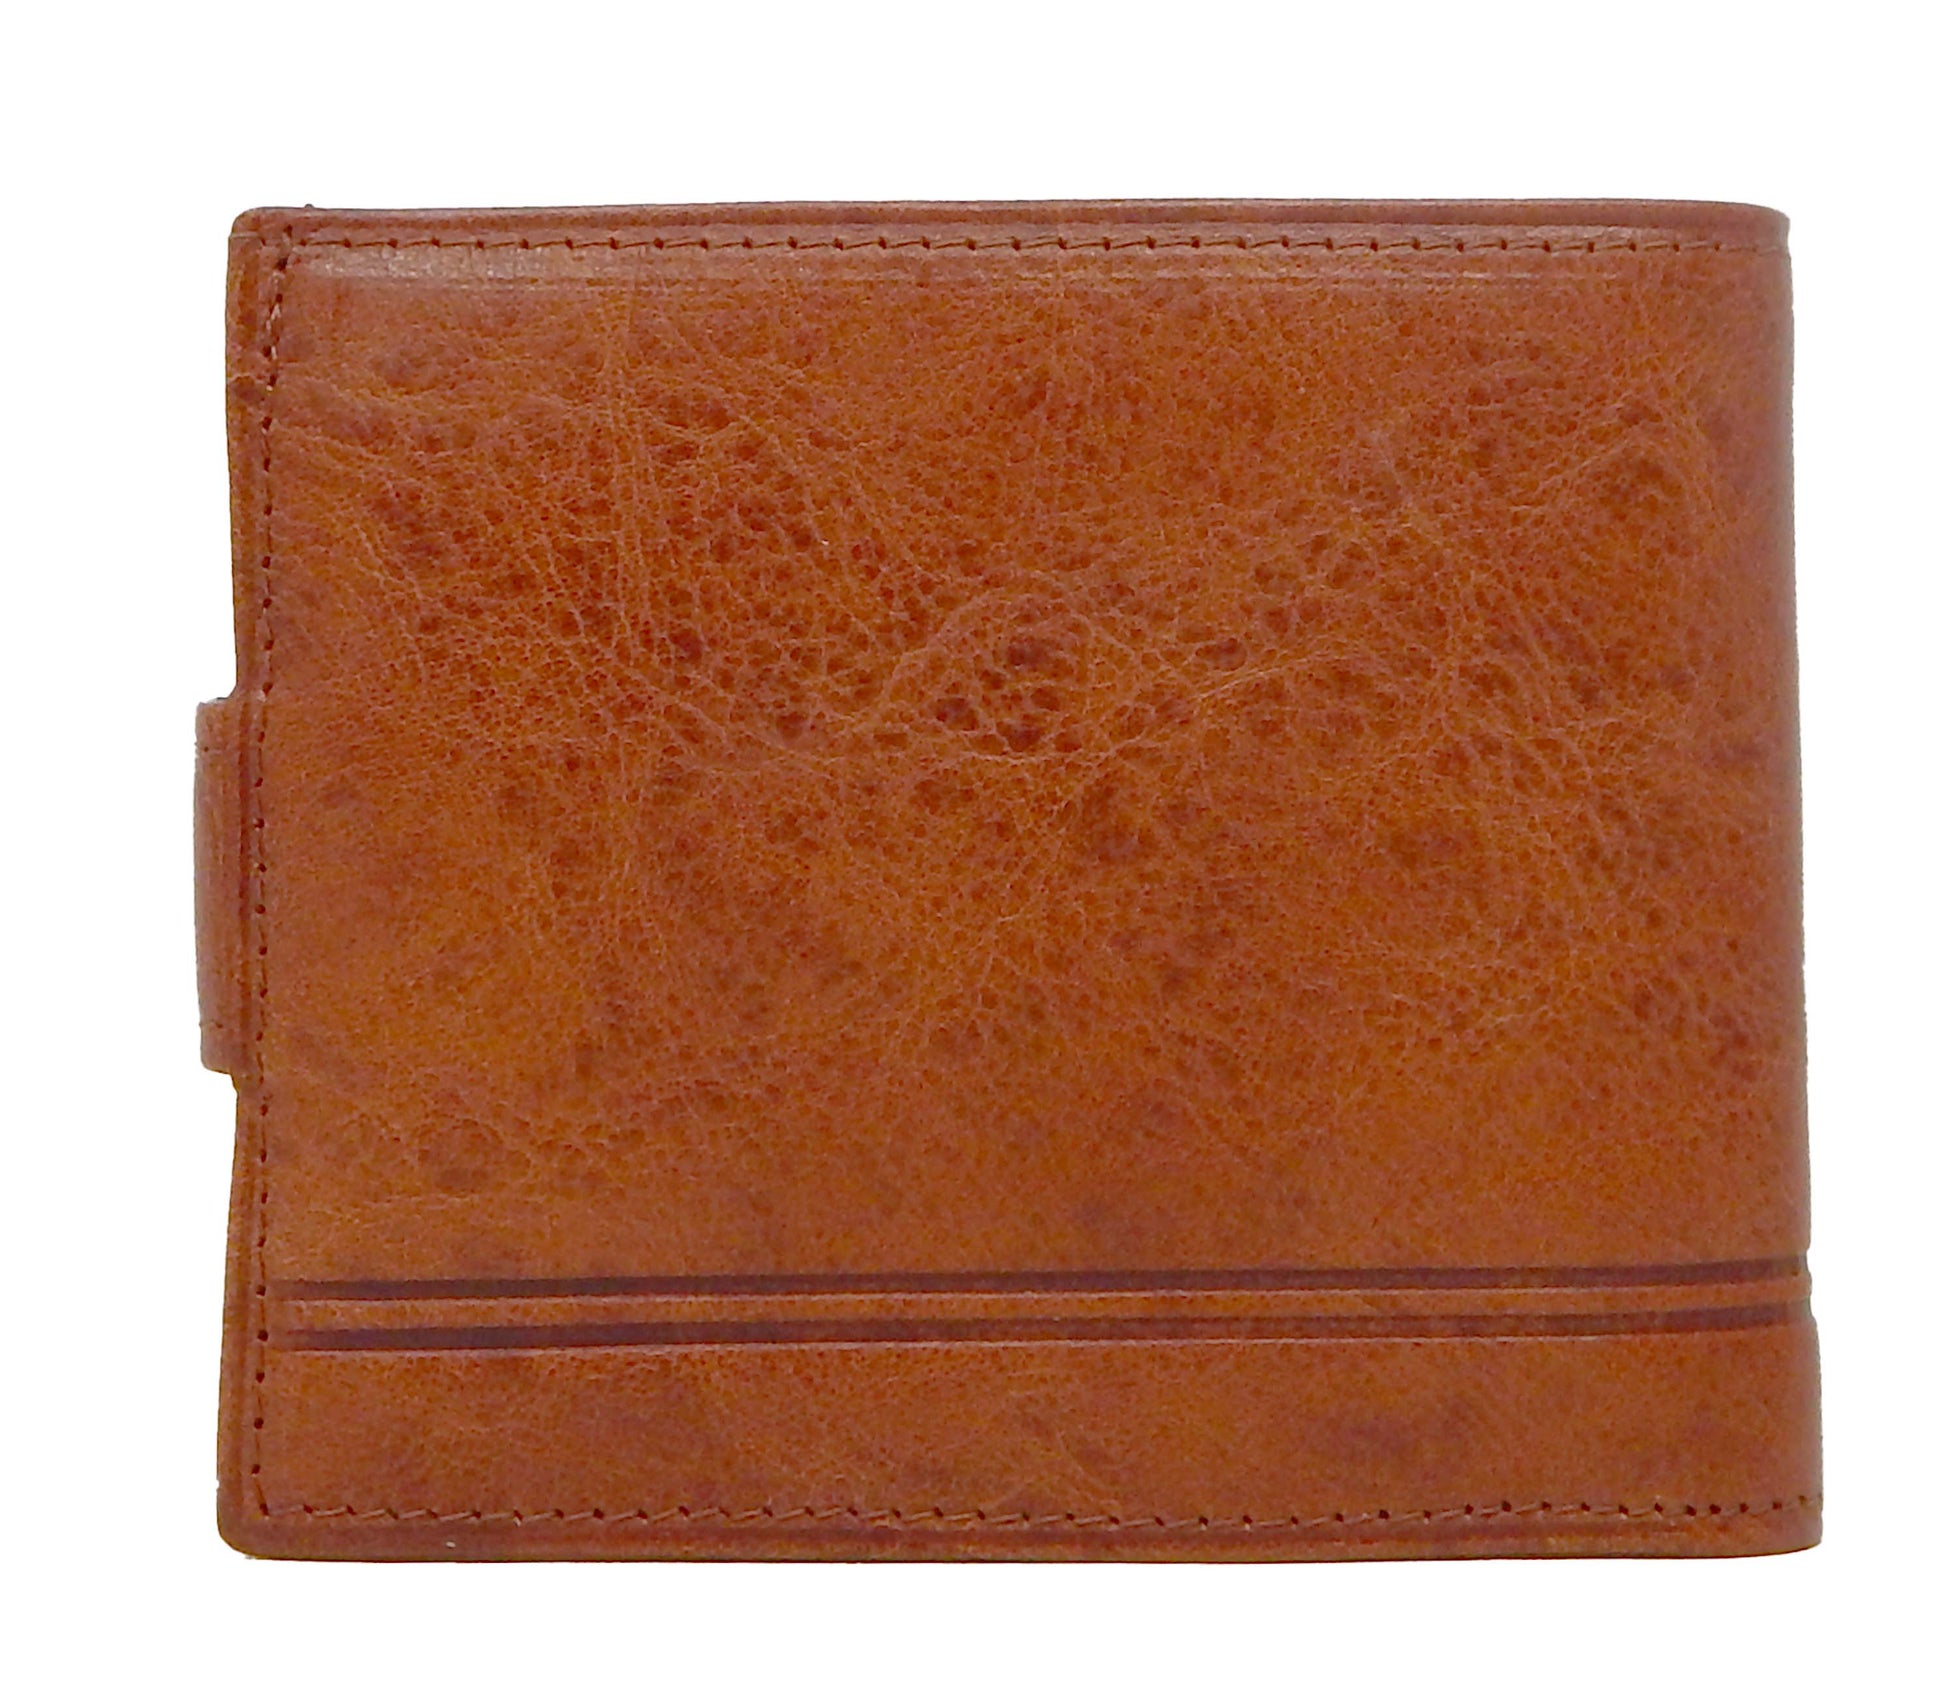 #color_ SaddleBrown | Cavalinho Men's Trifold Leather Wallet - SaddleBrown - 28610503.13.99_3